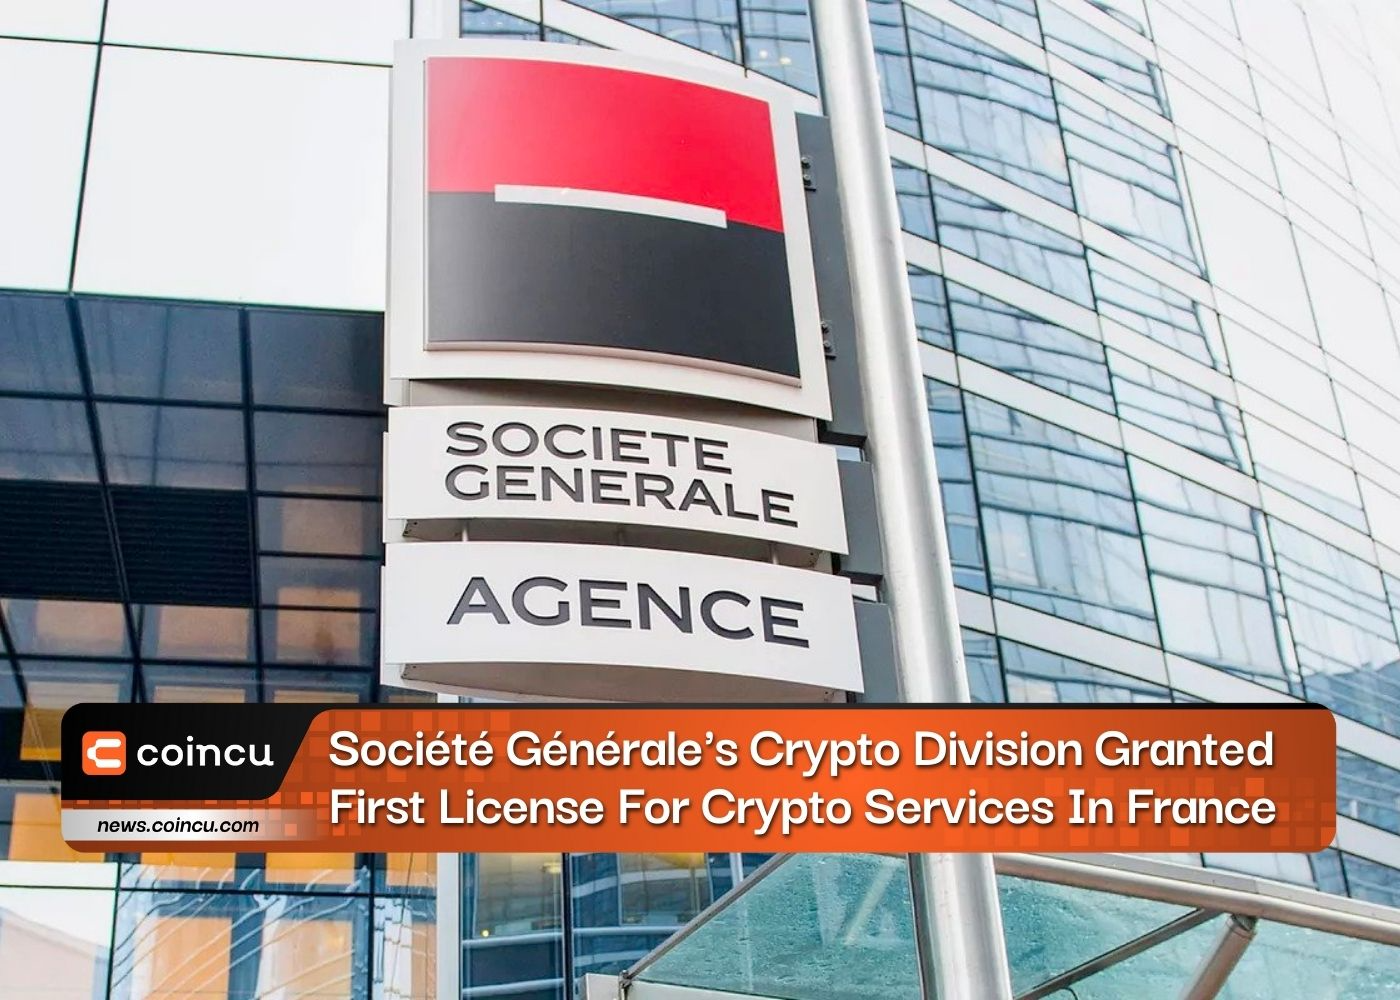 La division Crypto de la Société Générale obtient la première licence pour les services de cryptographie en France